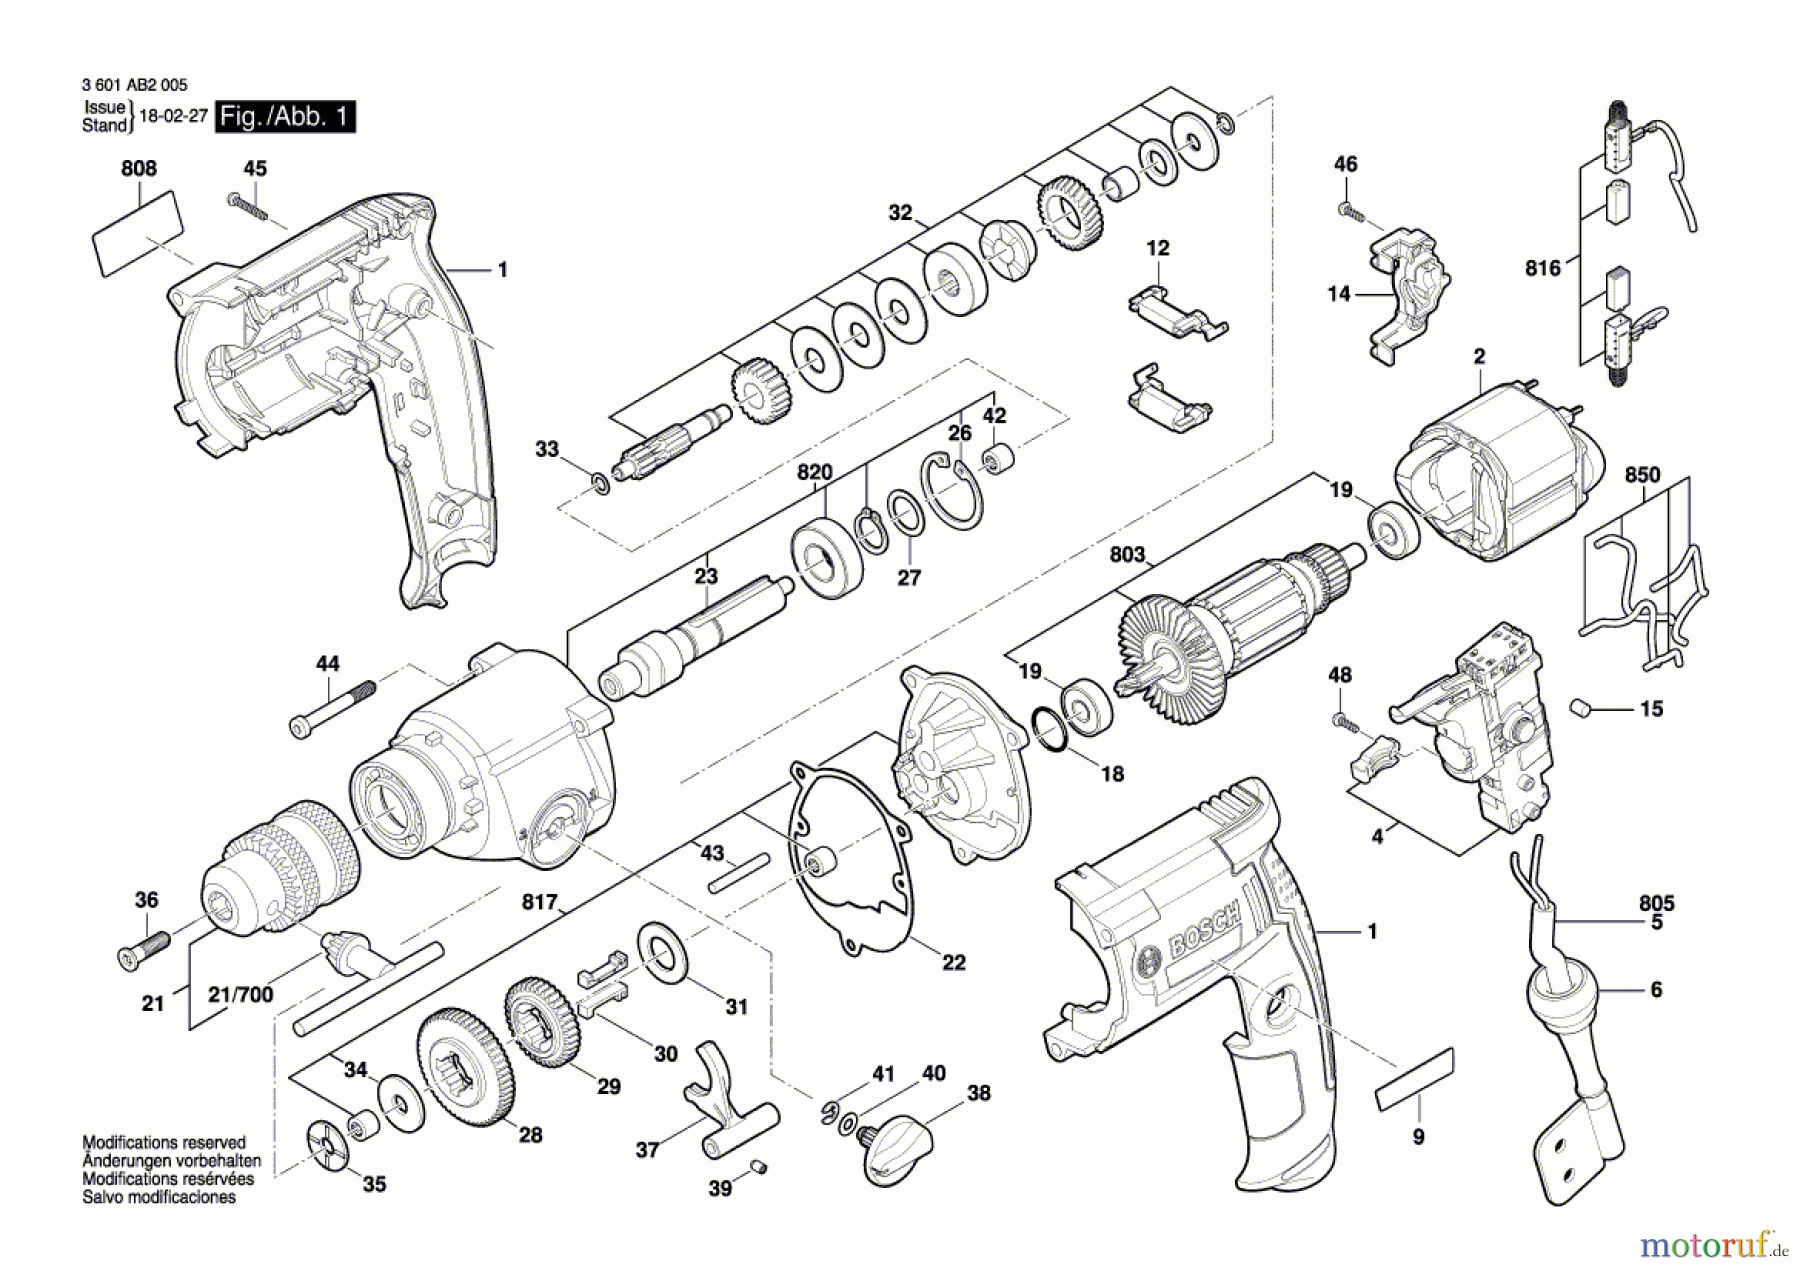  Bosch Werkzeug Bohrmaschine GBM13-2RE Seite 1